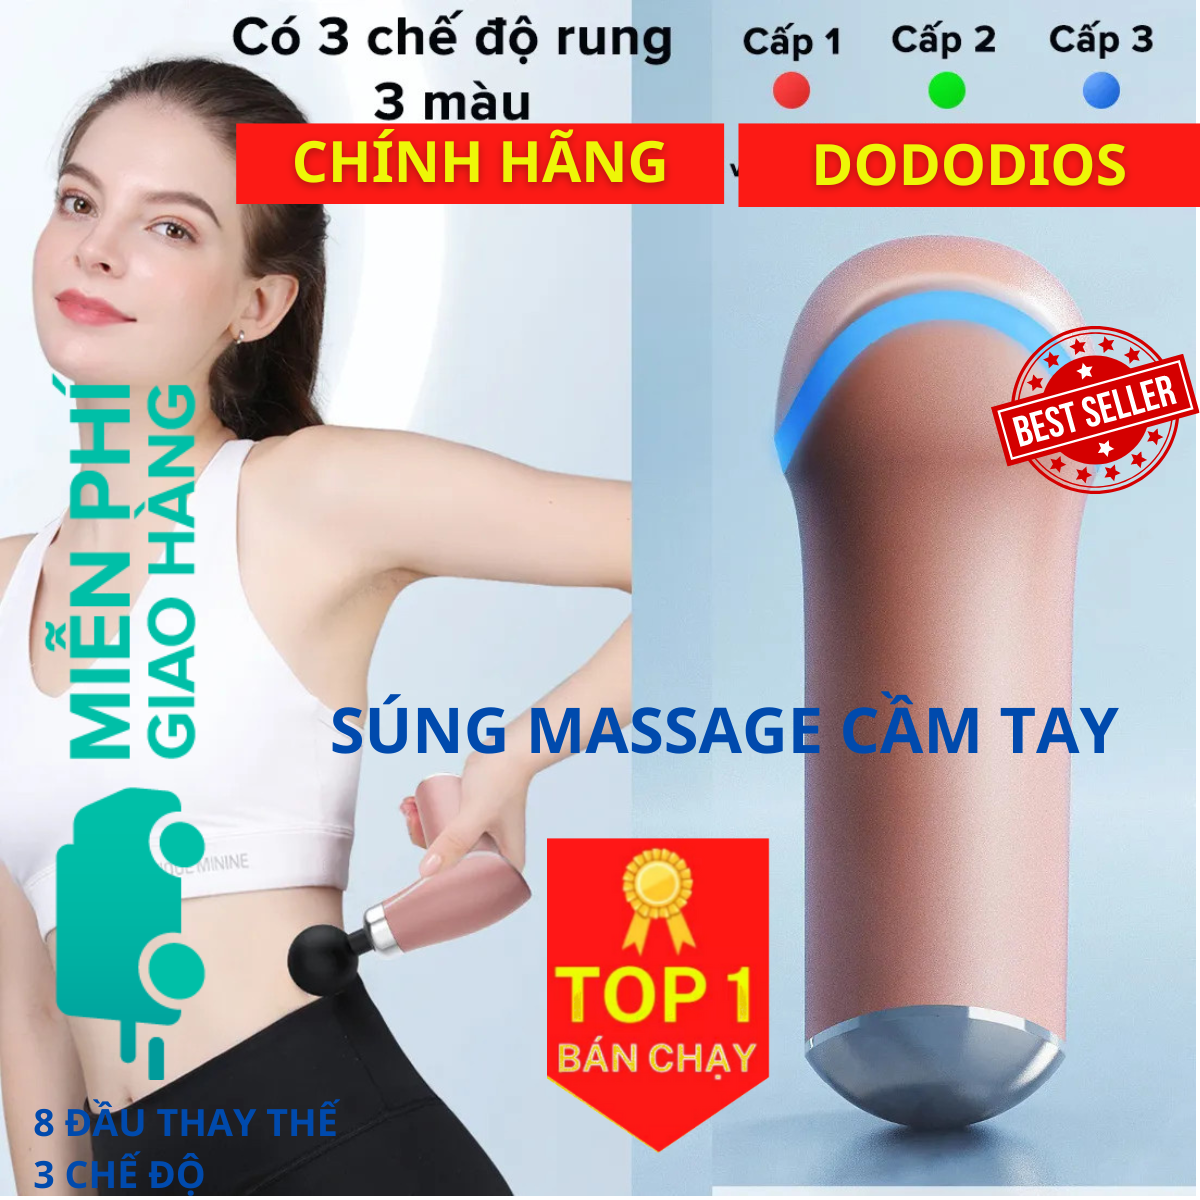 Máy Massage Cầm Tay Toàn Thân 3 Cấp Độ, 8 Đầu Thay Thế dododios - Chuyên Sâu Vai Lưng, Giảm Đau Cơ - Hàng Chính Hãng dododios